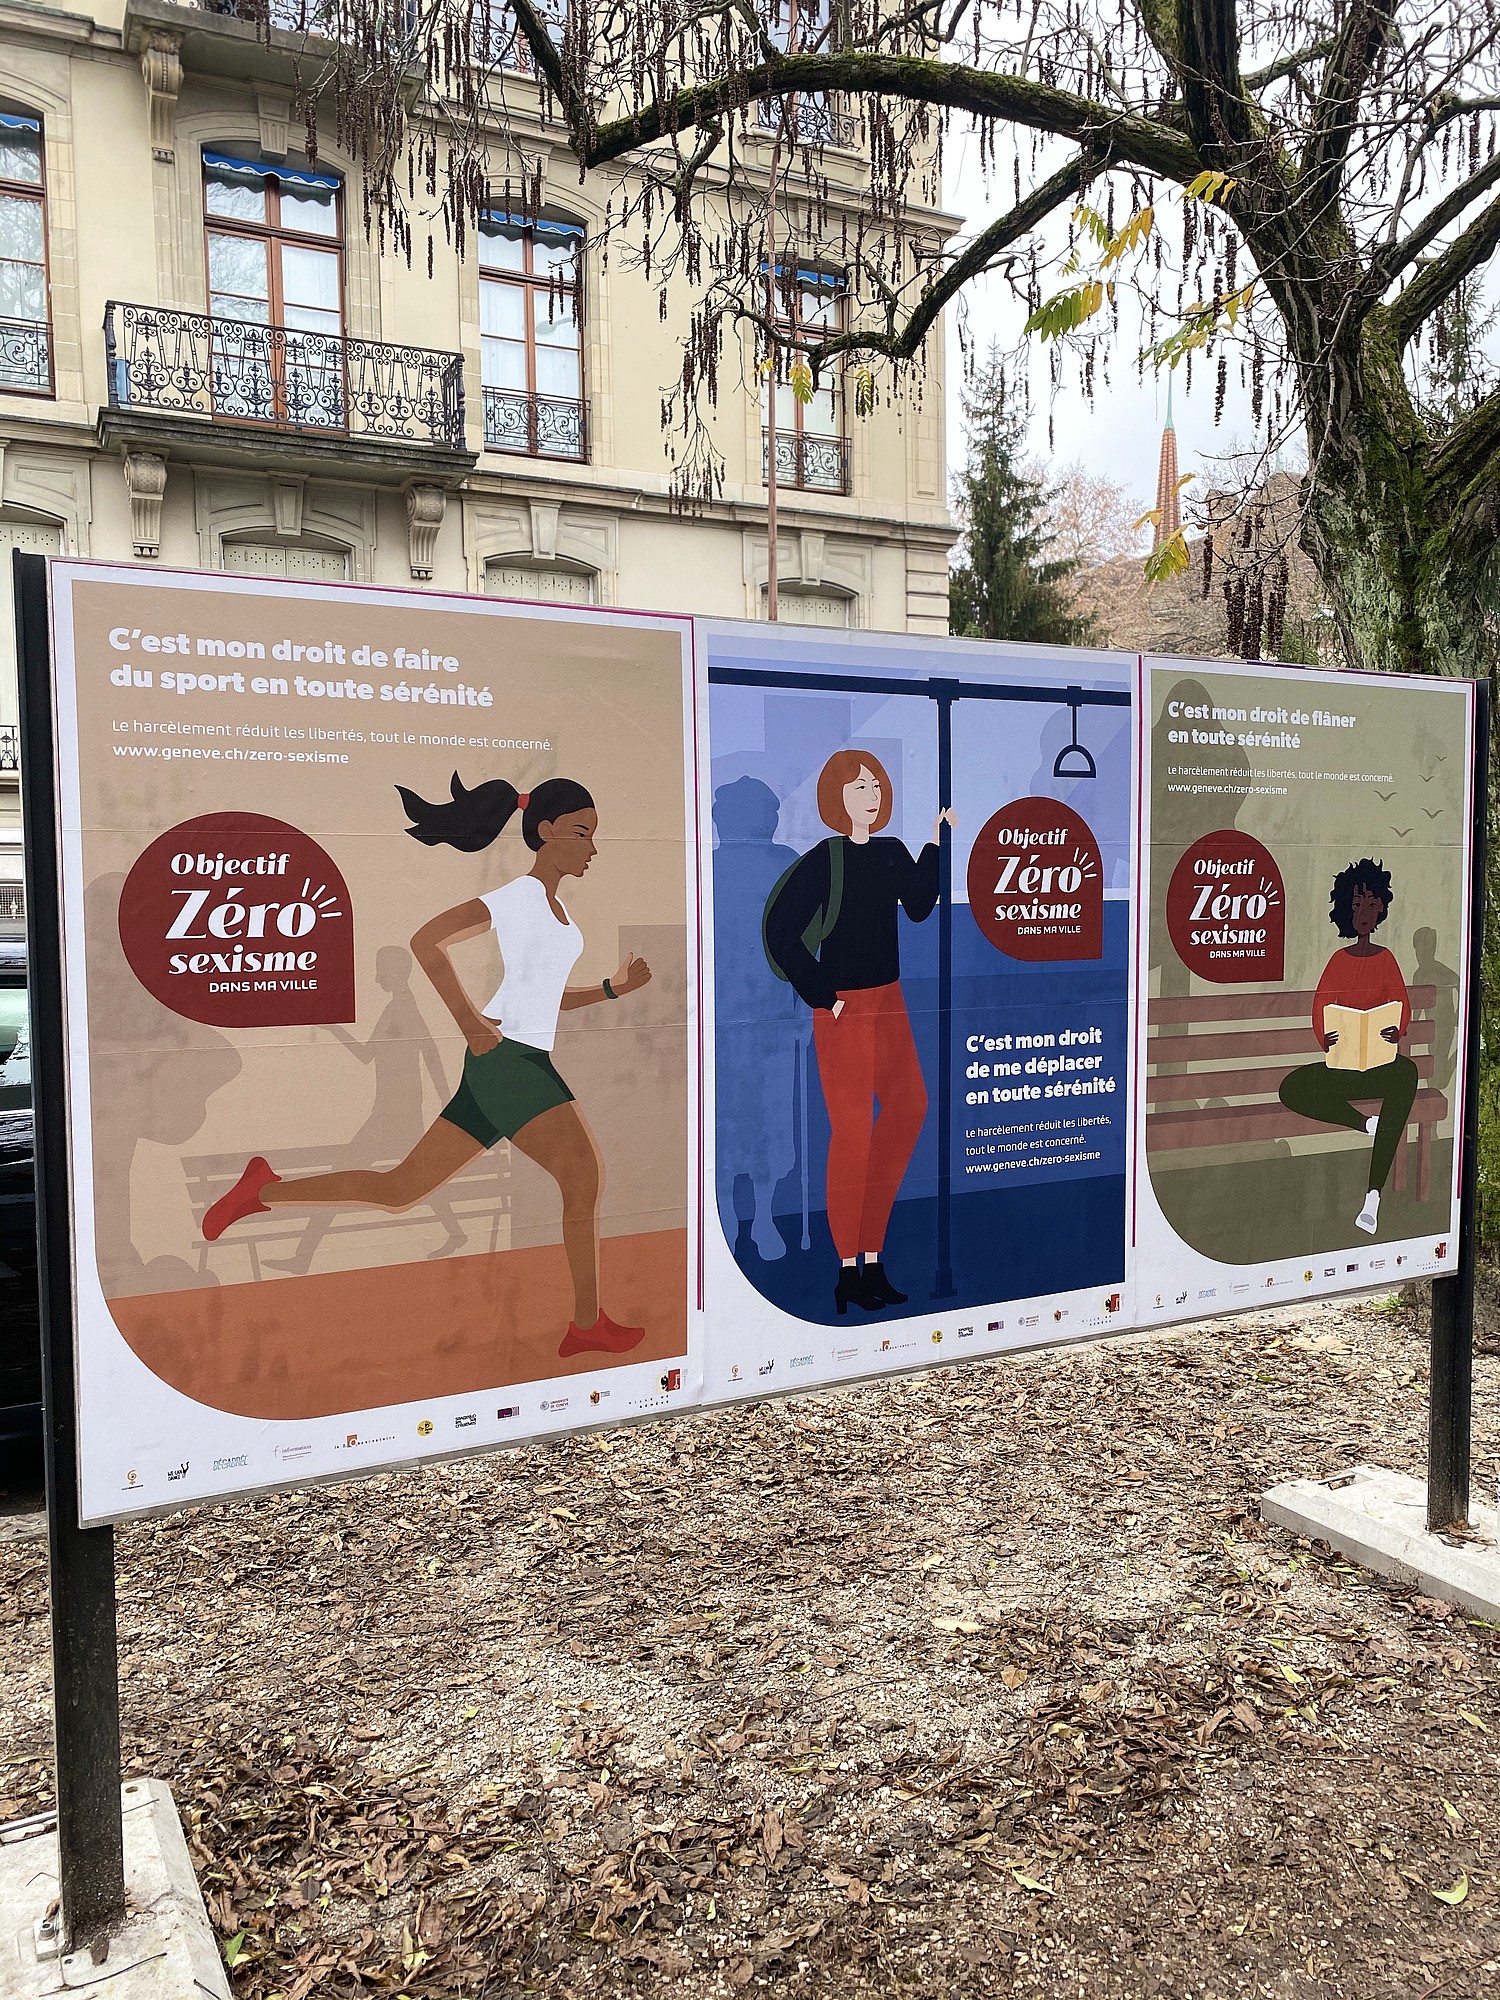 En 2019, Genève a adopté le plan d’action «Objectif zéro sexisme dans ma ville!» pour une durée de trois ans. Son ambition est de prévenir le sexisme et le harcèlement pour faire des espaces publics des espaces ouverts, accessibles et accueillants.